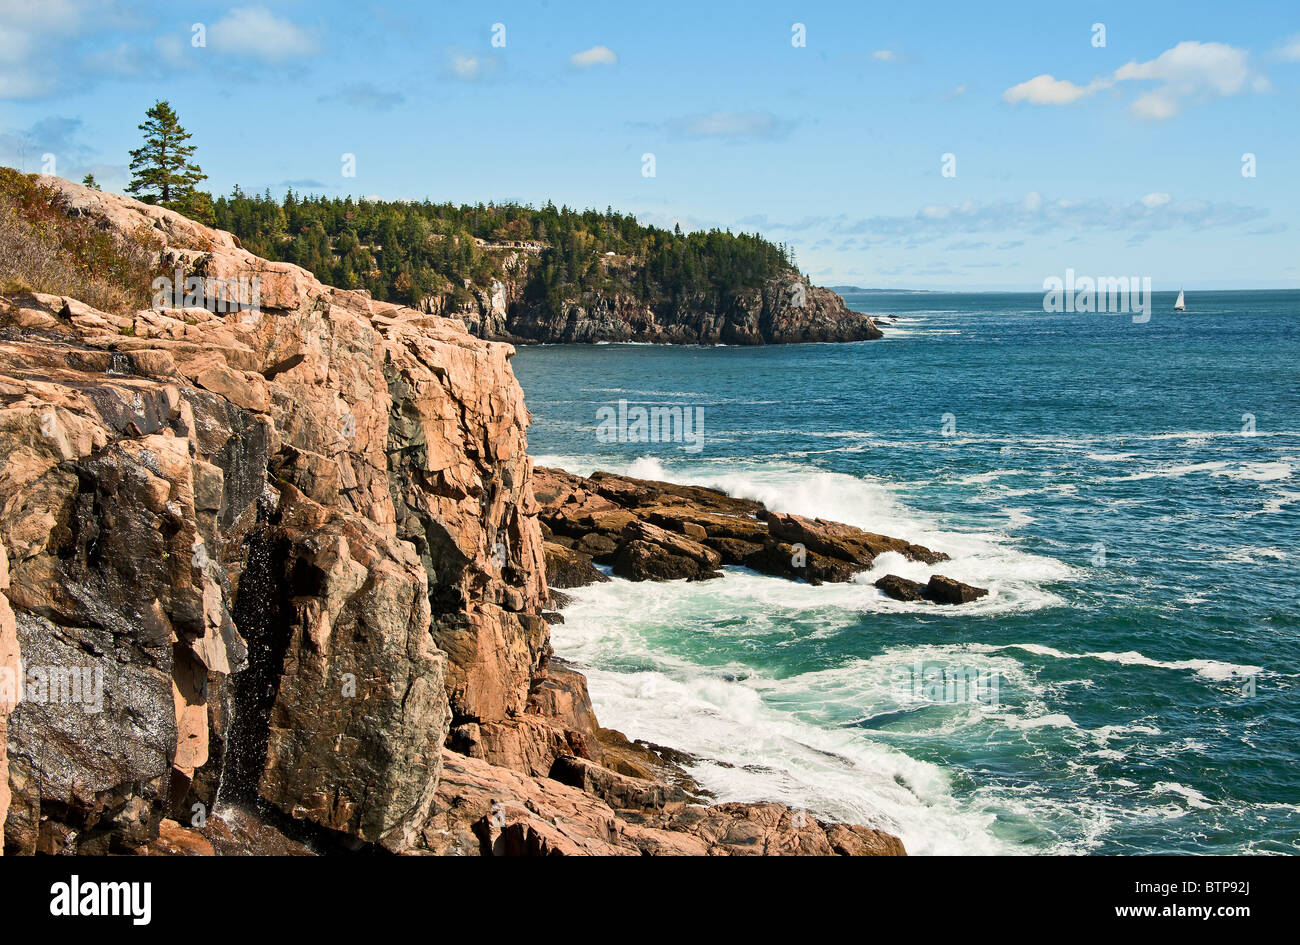 Paysage côtier, Ocean Drive, l'Acadie NP, Maine, États-Unis Banque D'Images